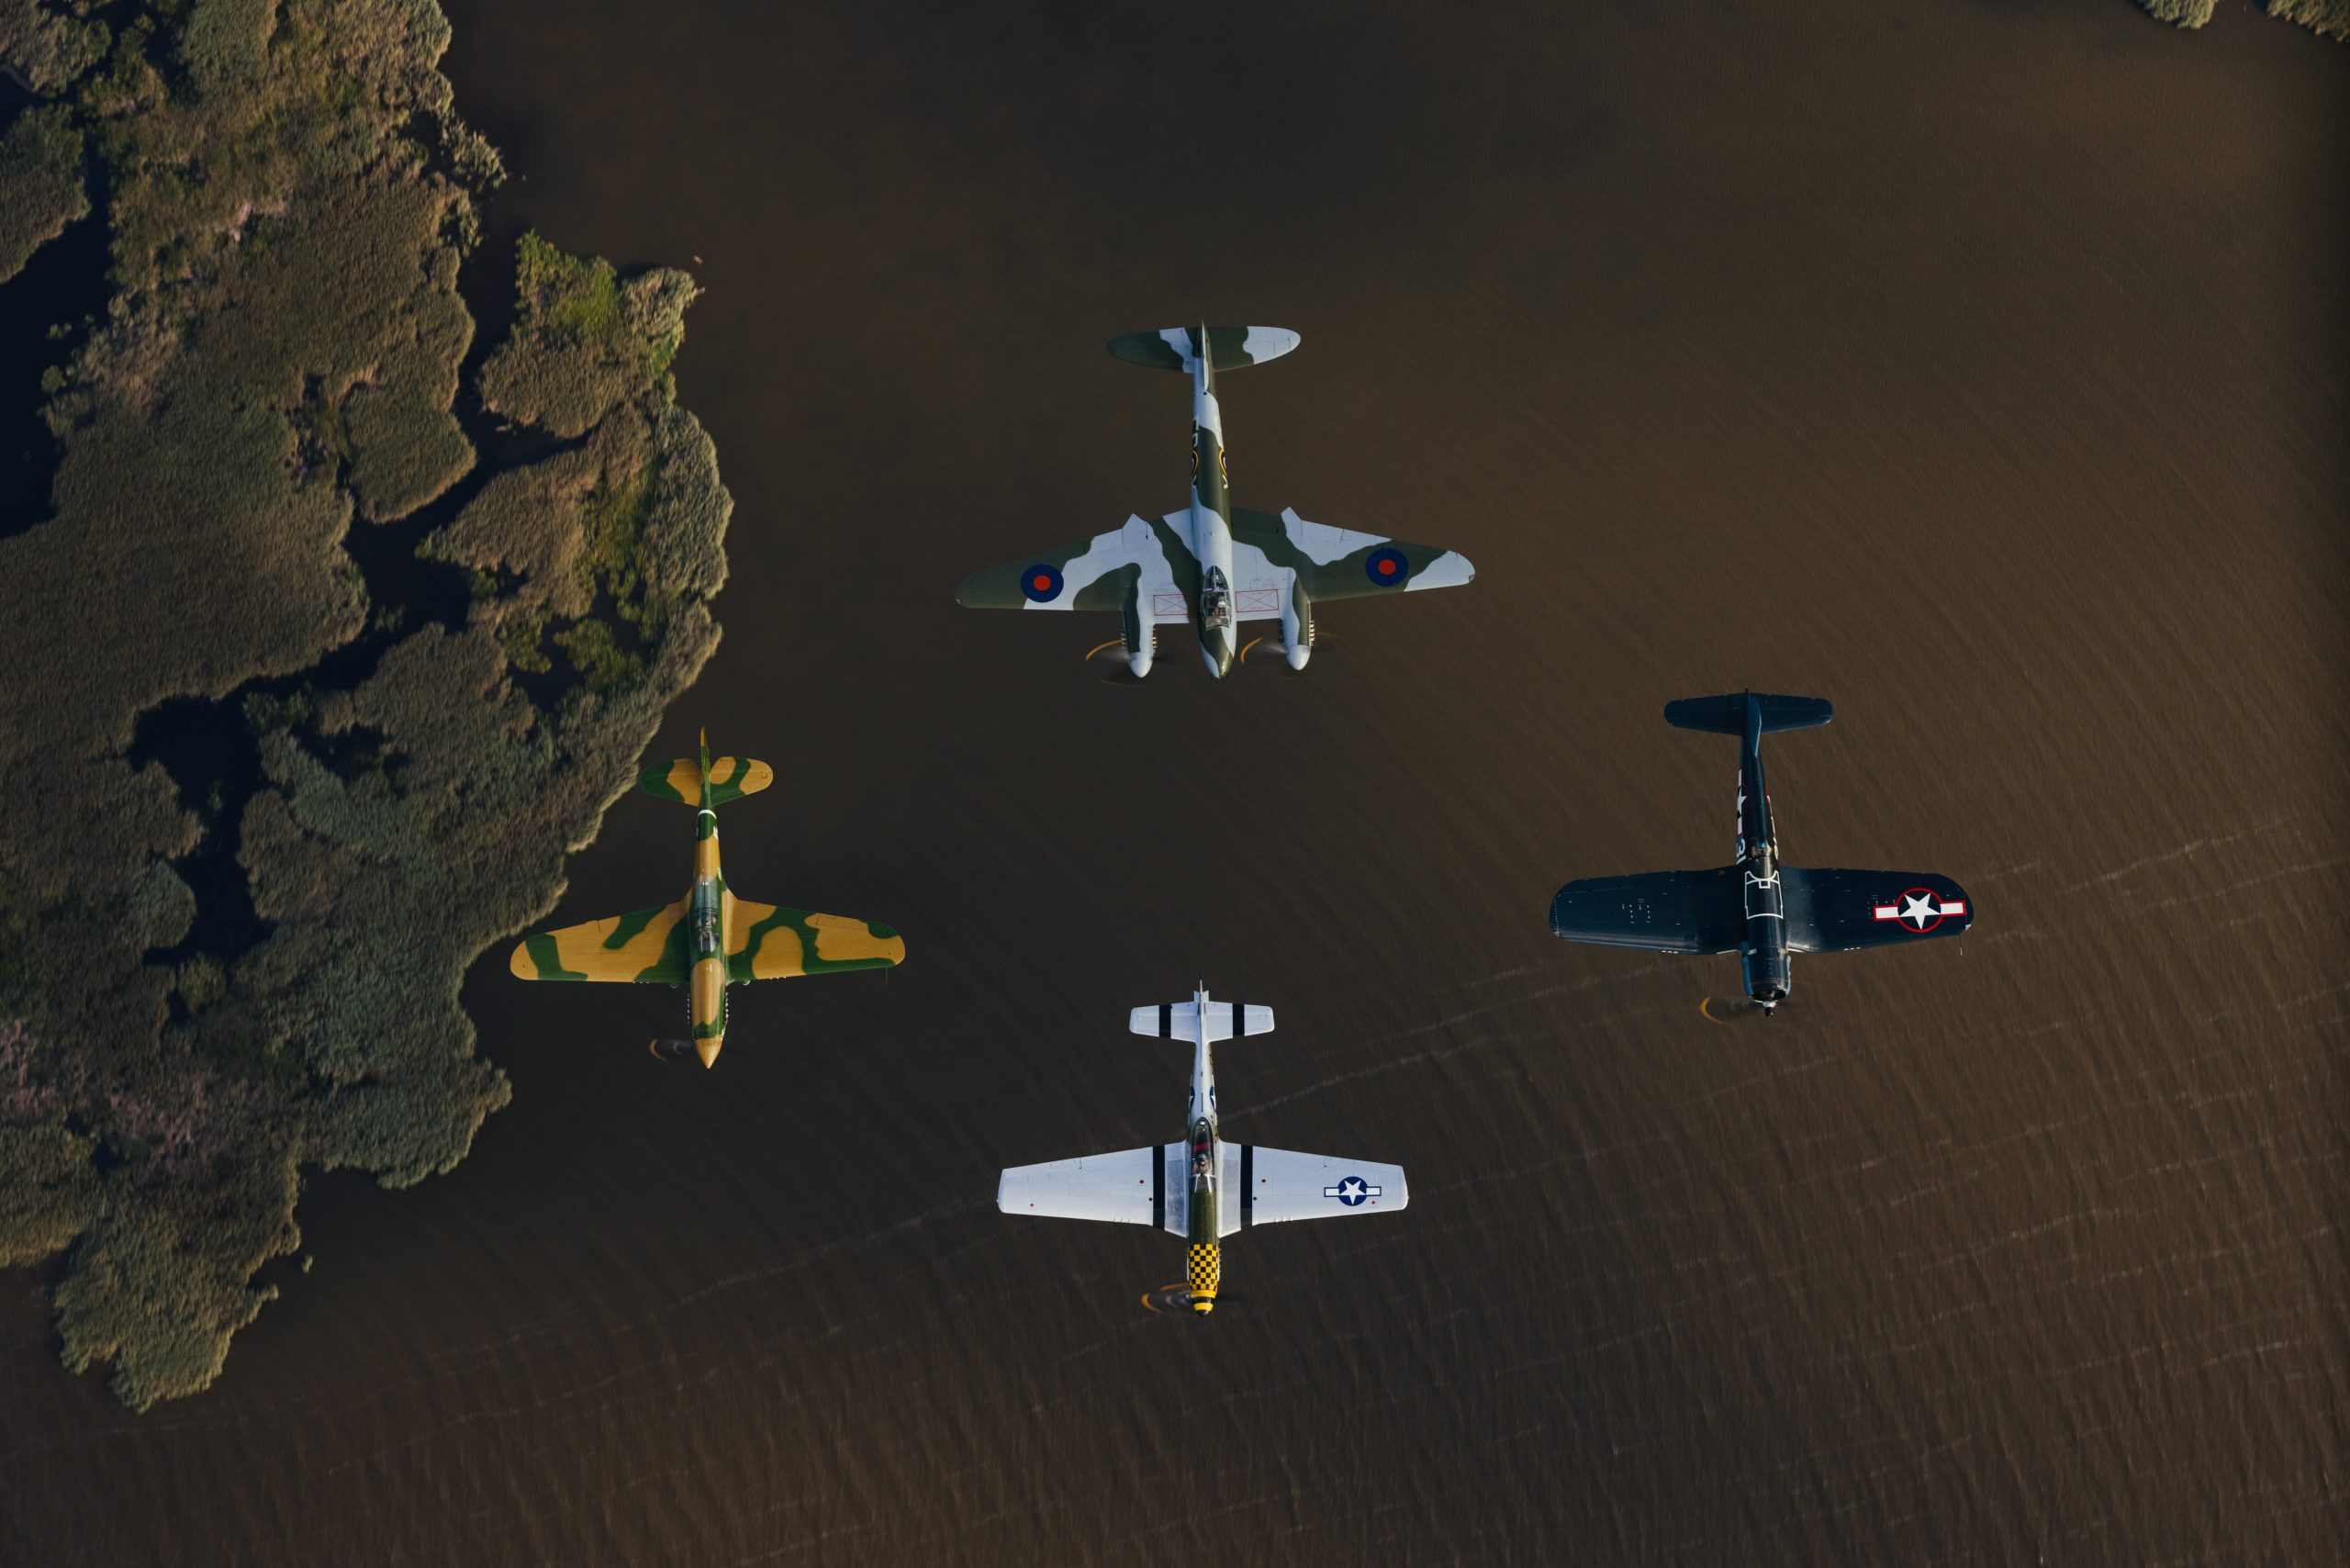 Four Legendary Planes